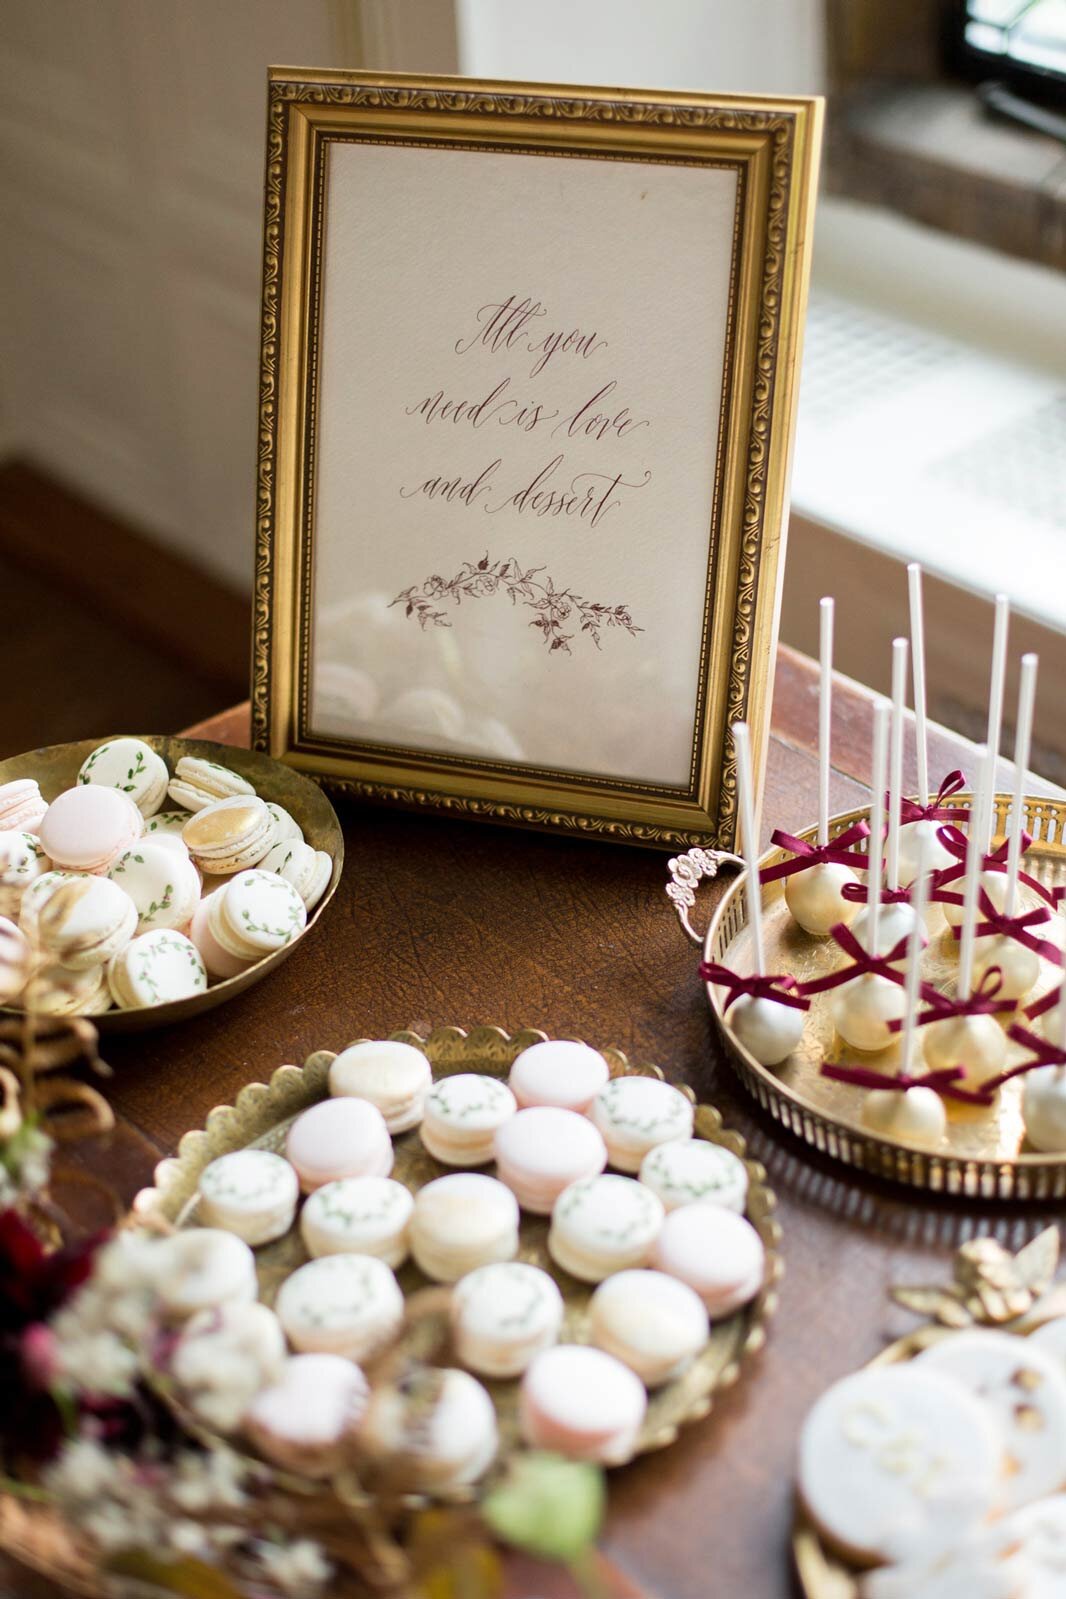 bespoke-wedding-calligraphy-dessert-table-sign-handmade-paper.jpg